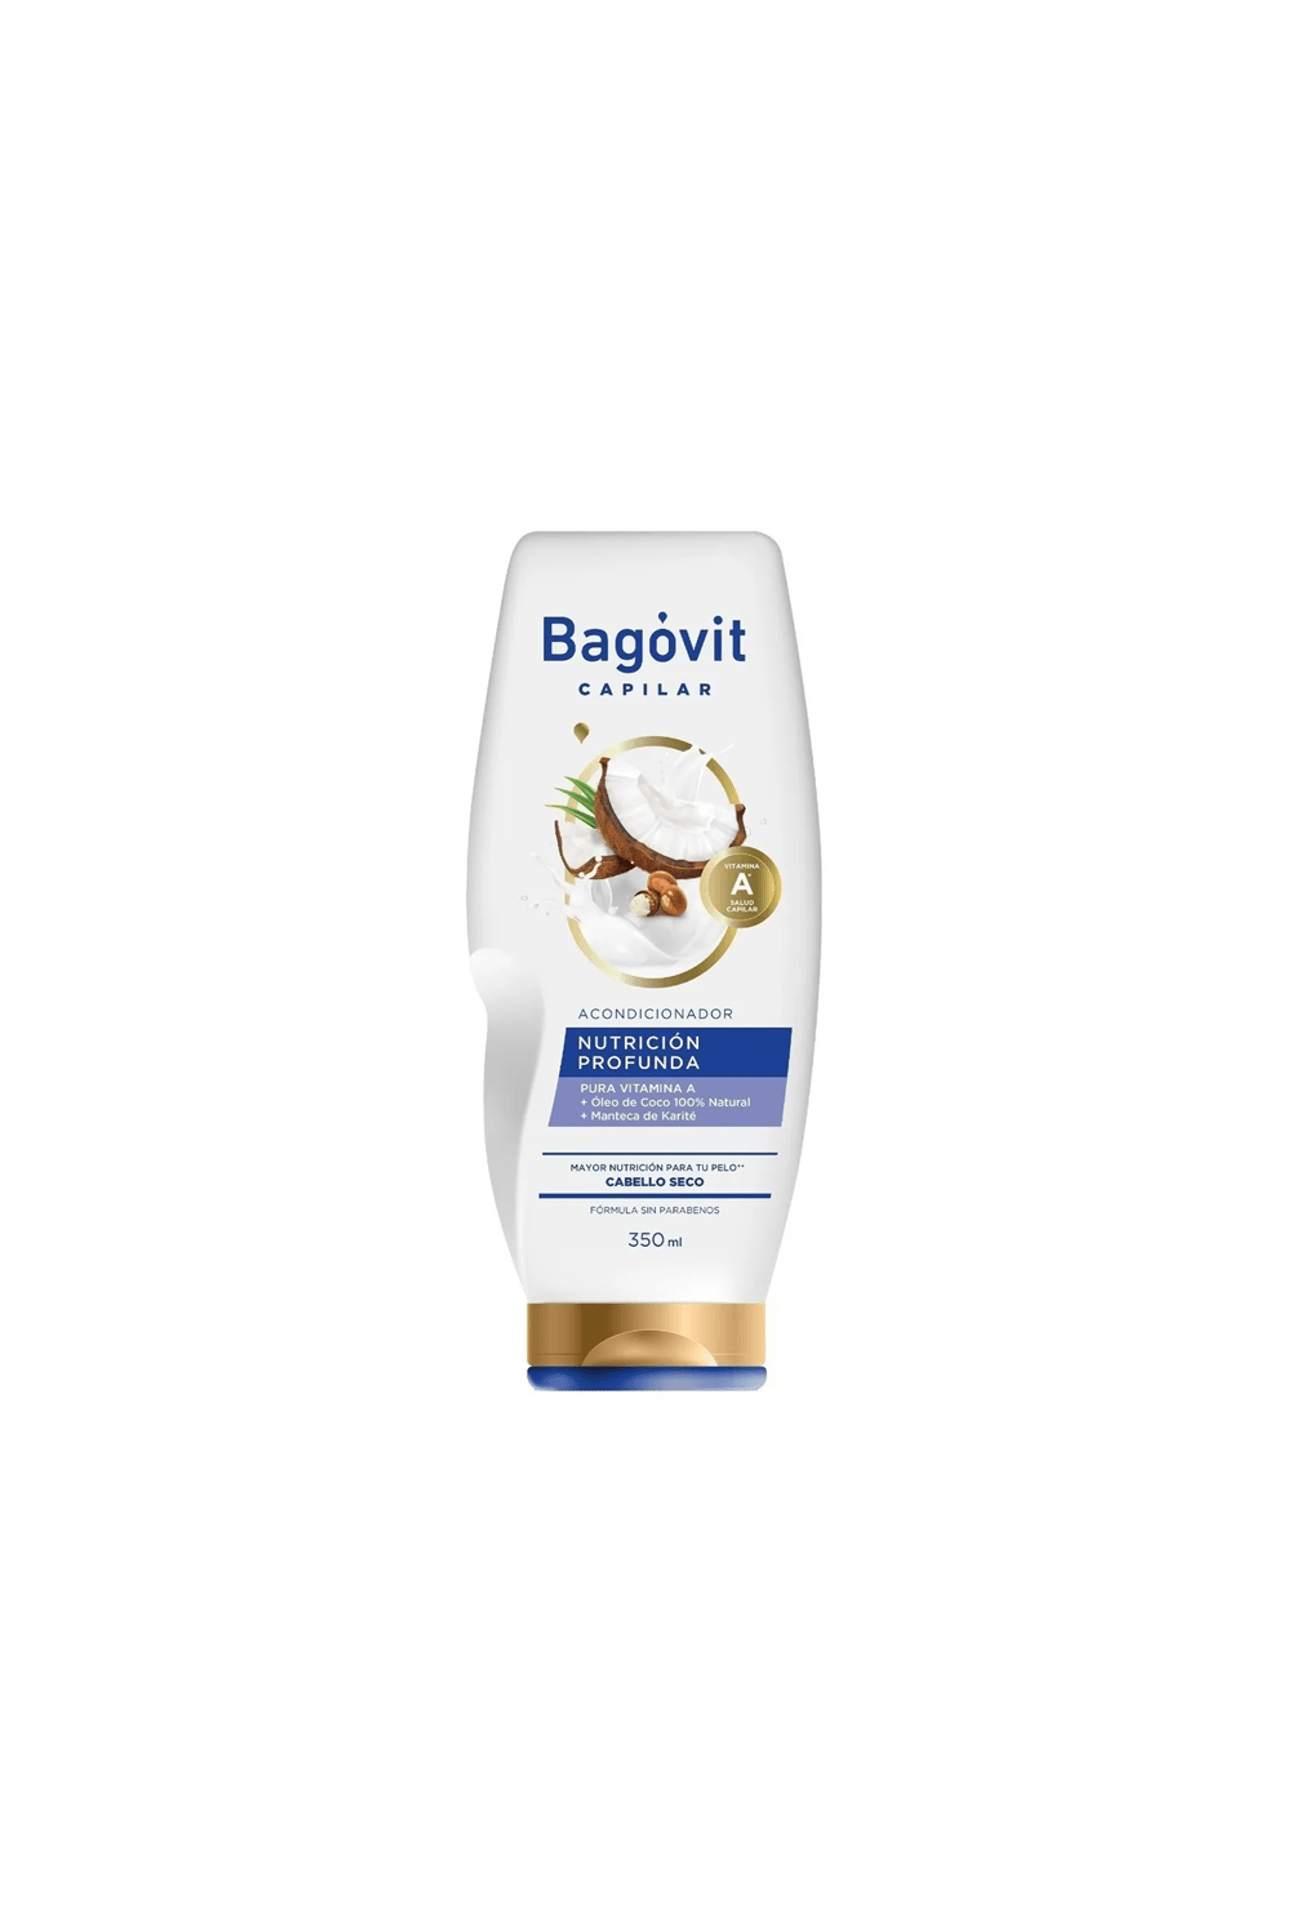 Bagovit-Shampoo-Bagovit-Nutricion-Profunda-x-350-ml-7790375269685_img1